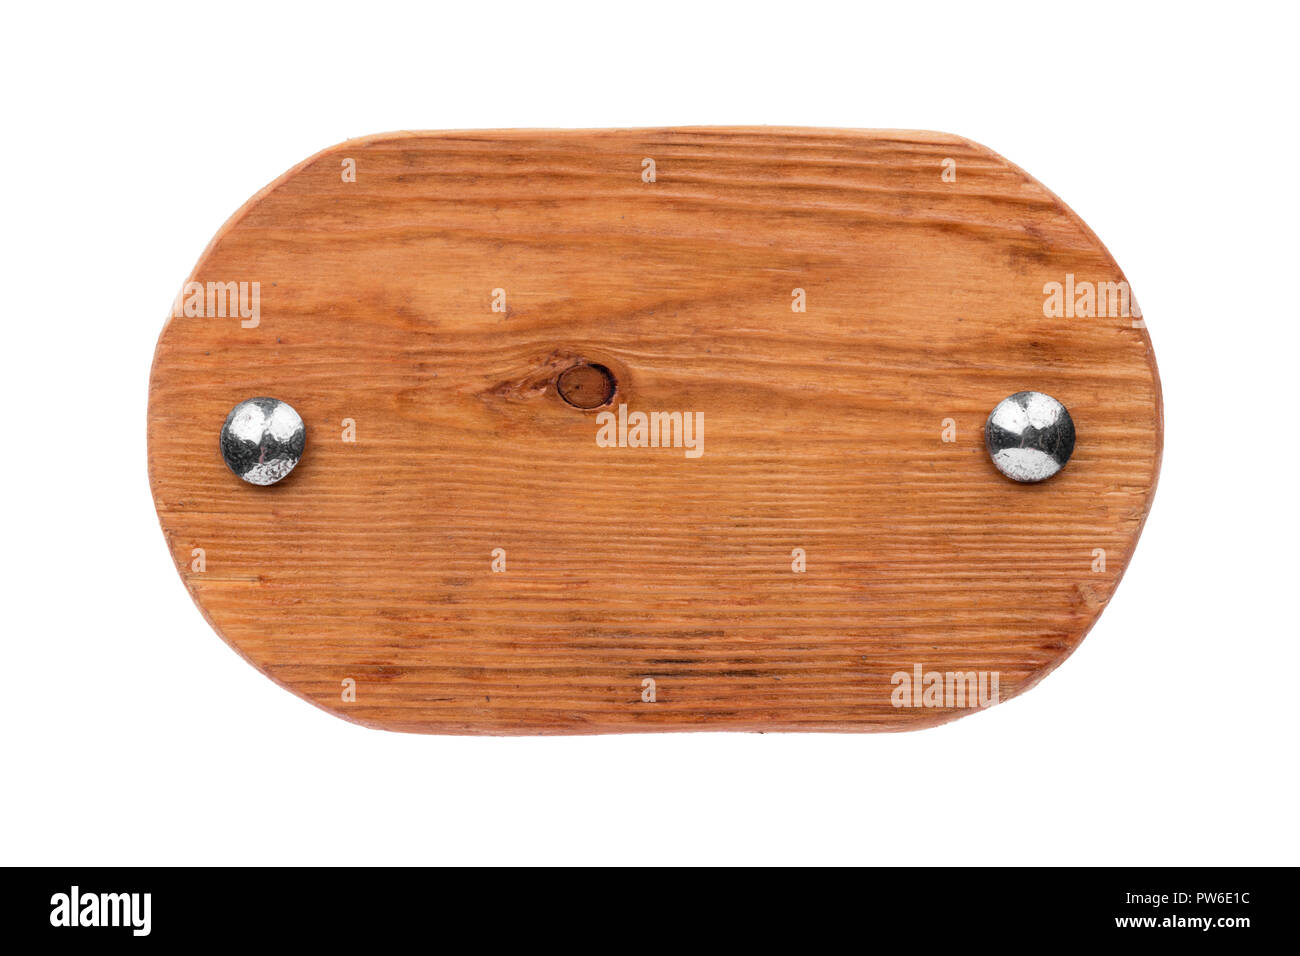 Vecchio legno ovale bordo cromato con bulloni. Isolato su sfondo bianco Foto Stock